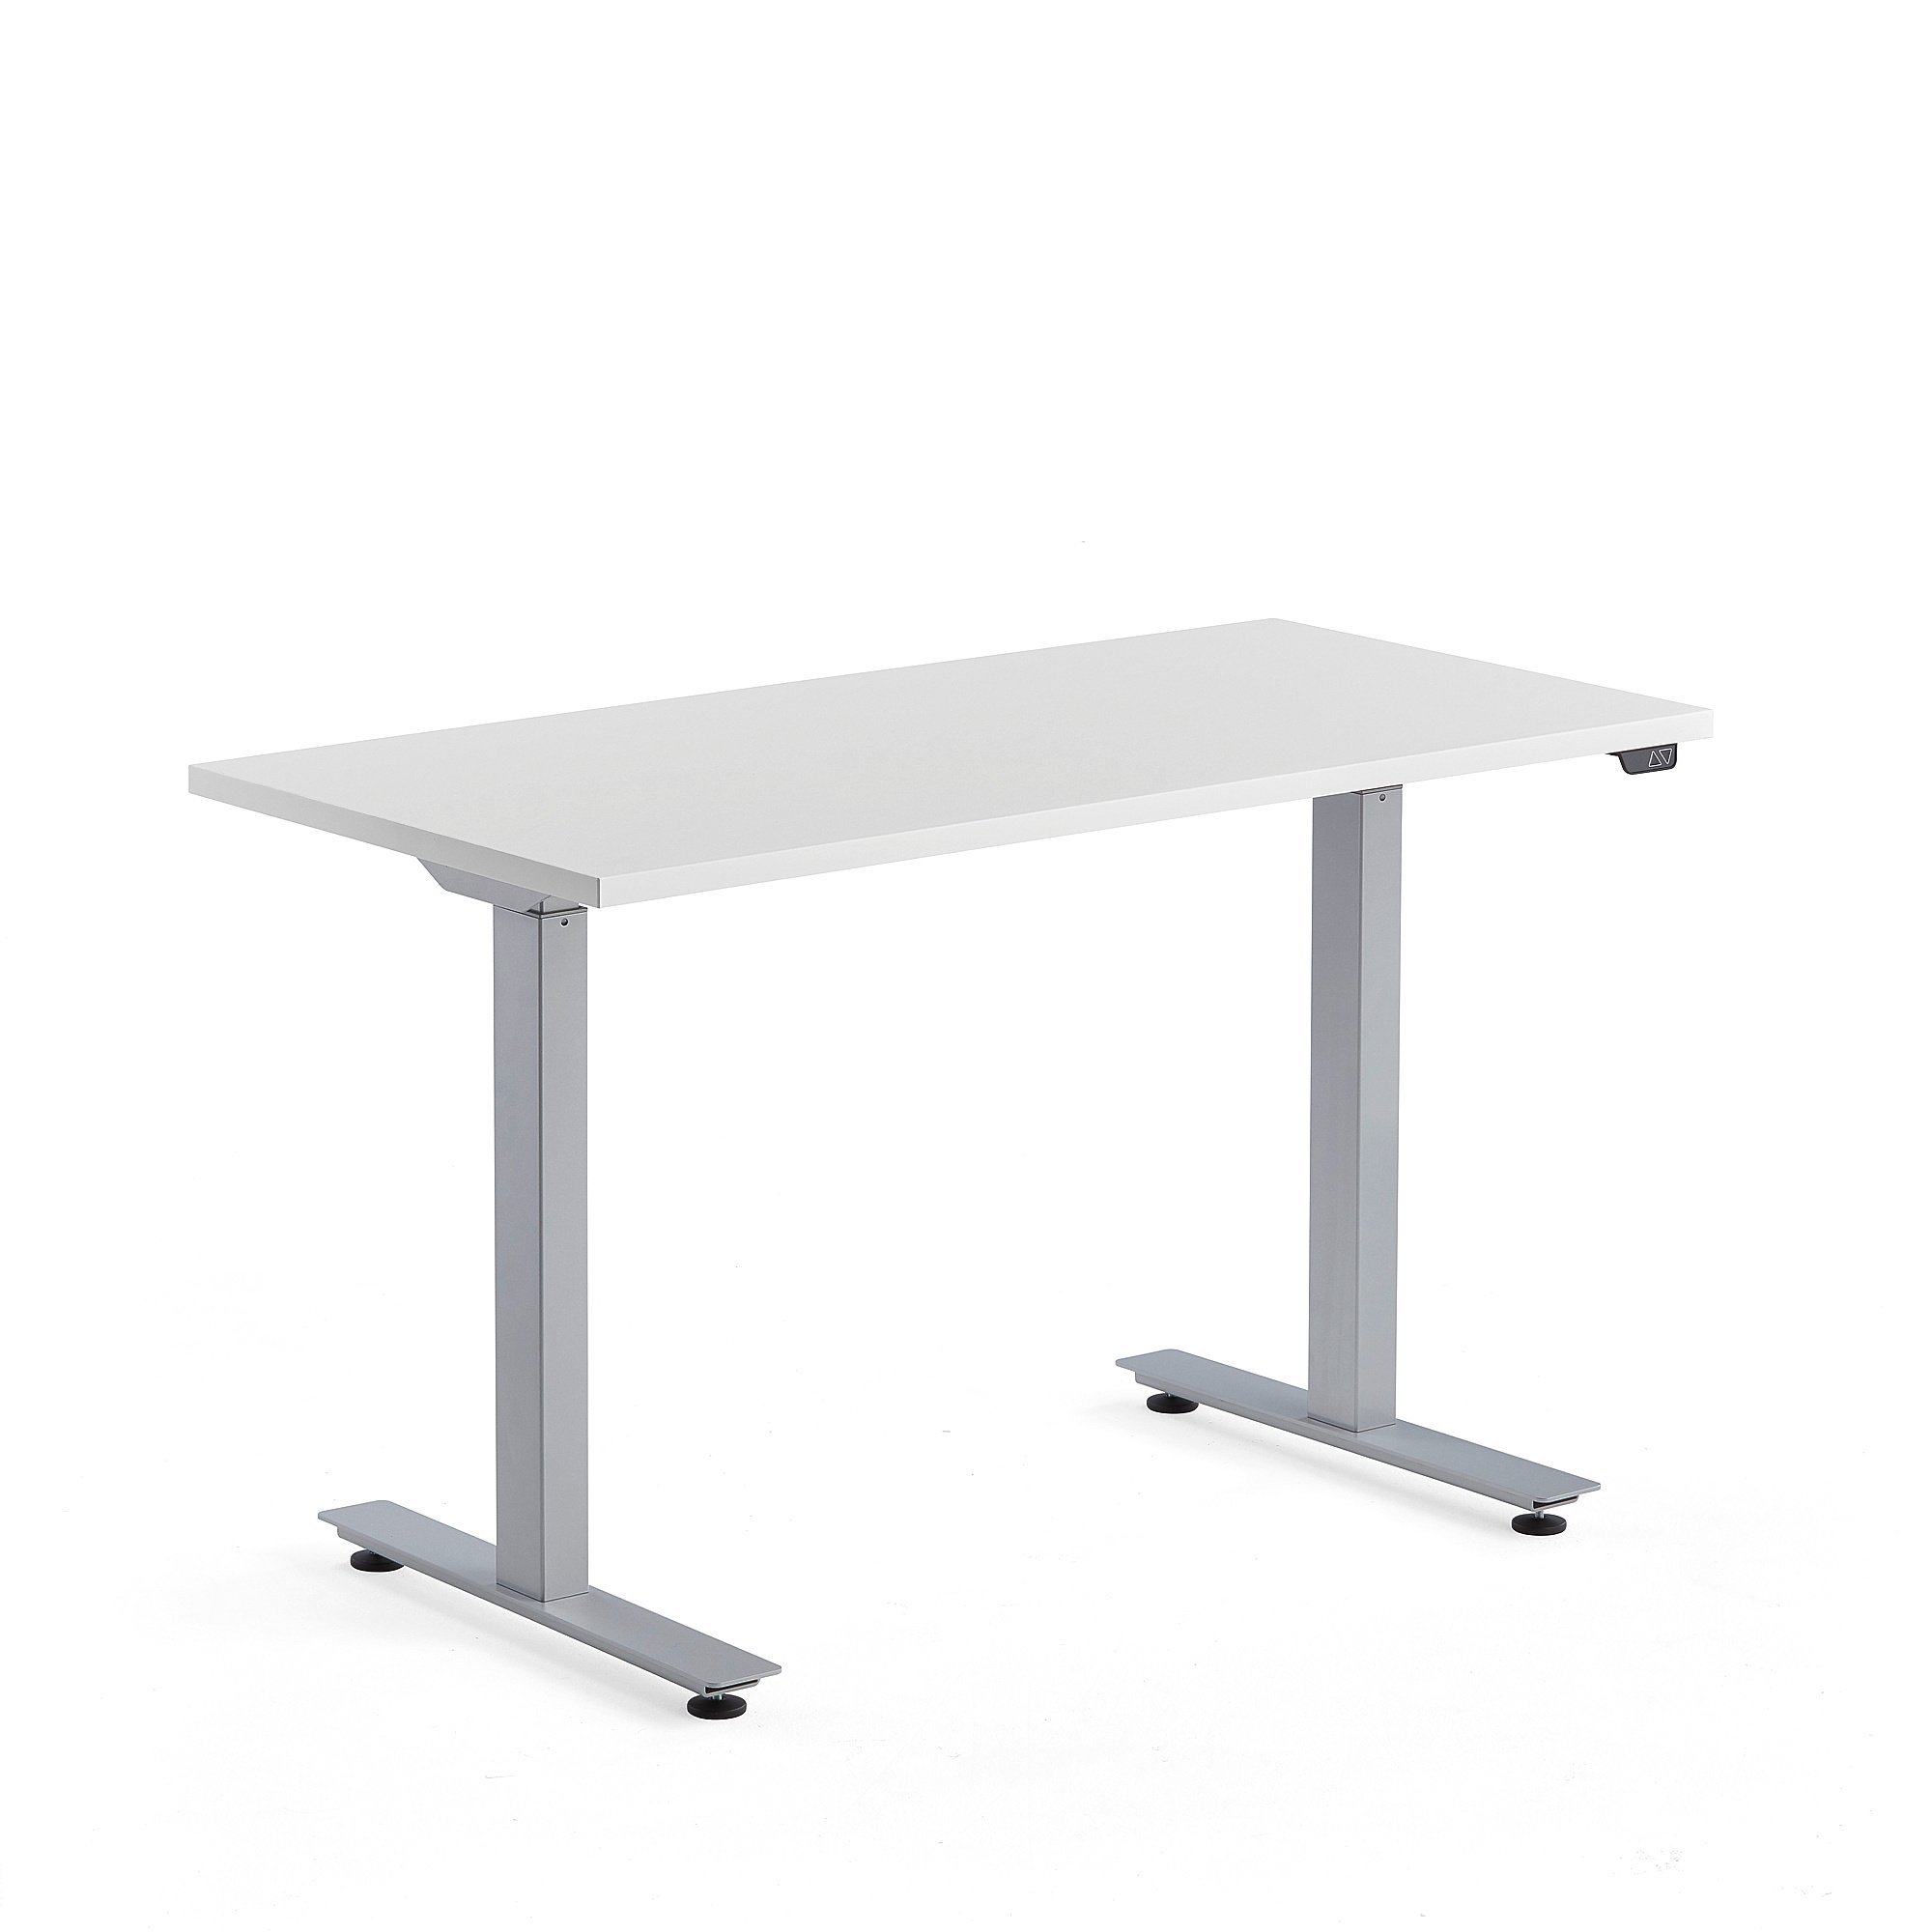 Výškově nastavitelný stůl MODULUS, 1200x600 mm, stříbrný rám, bílá